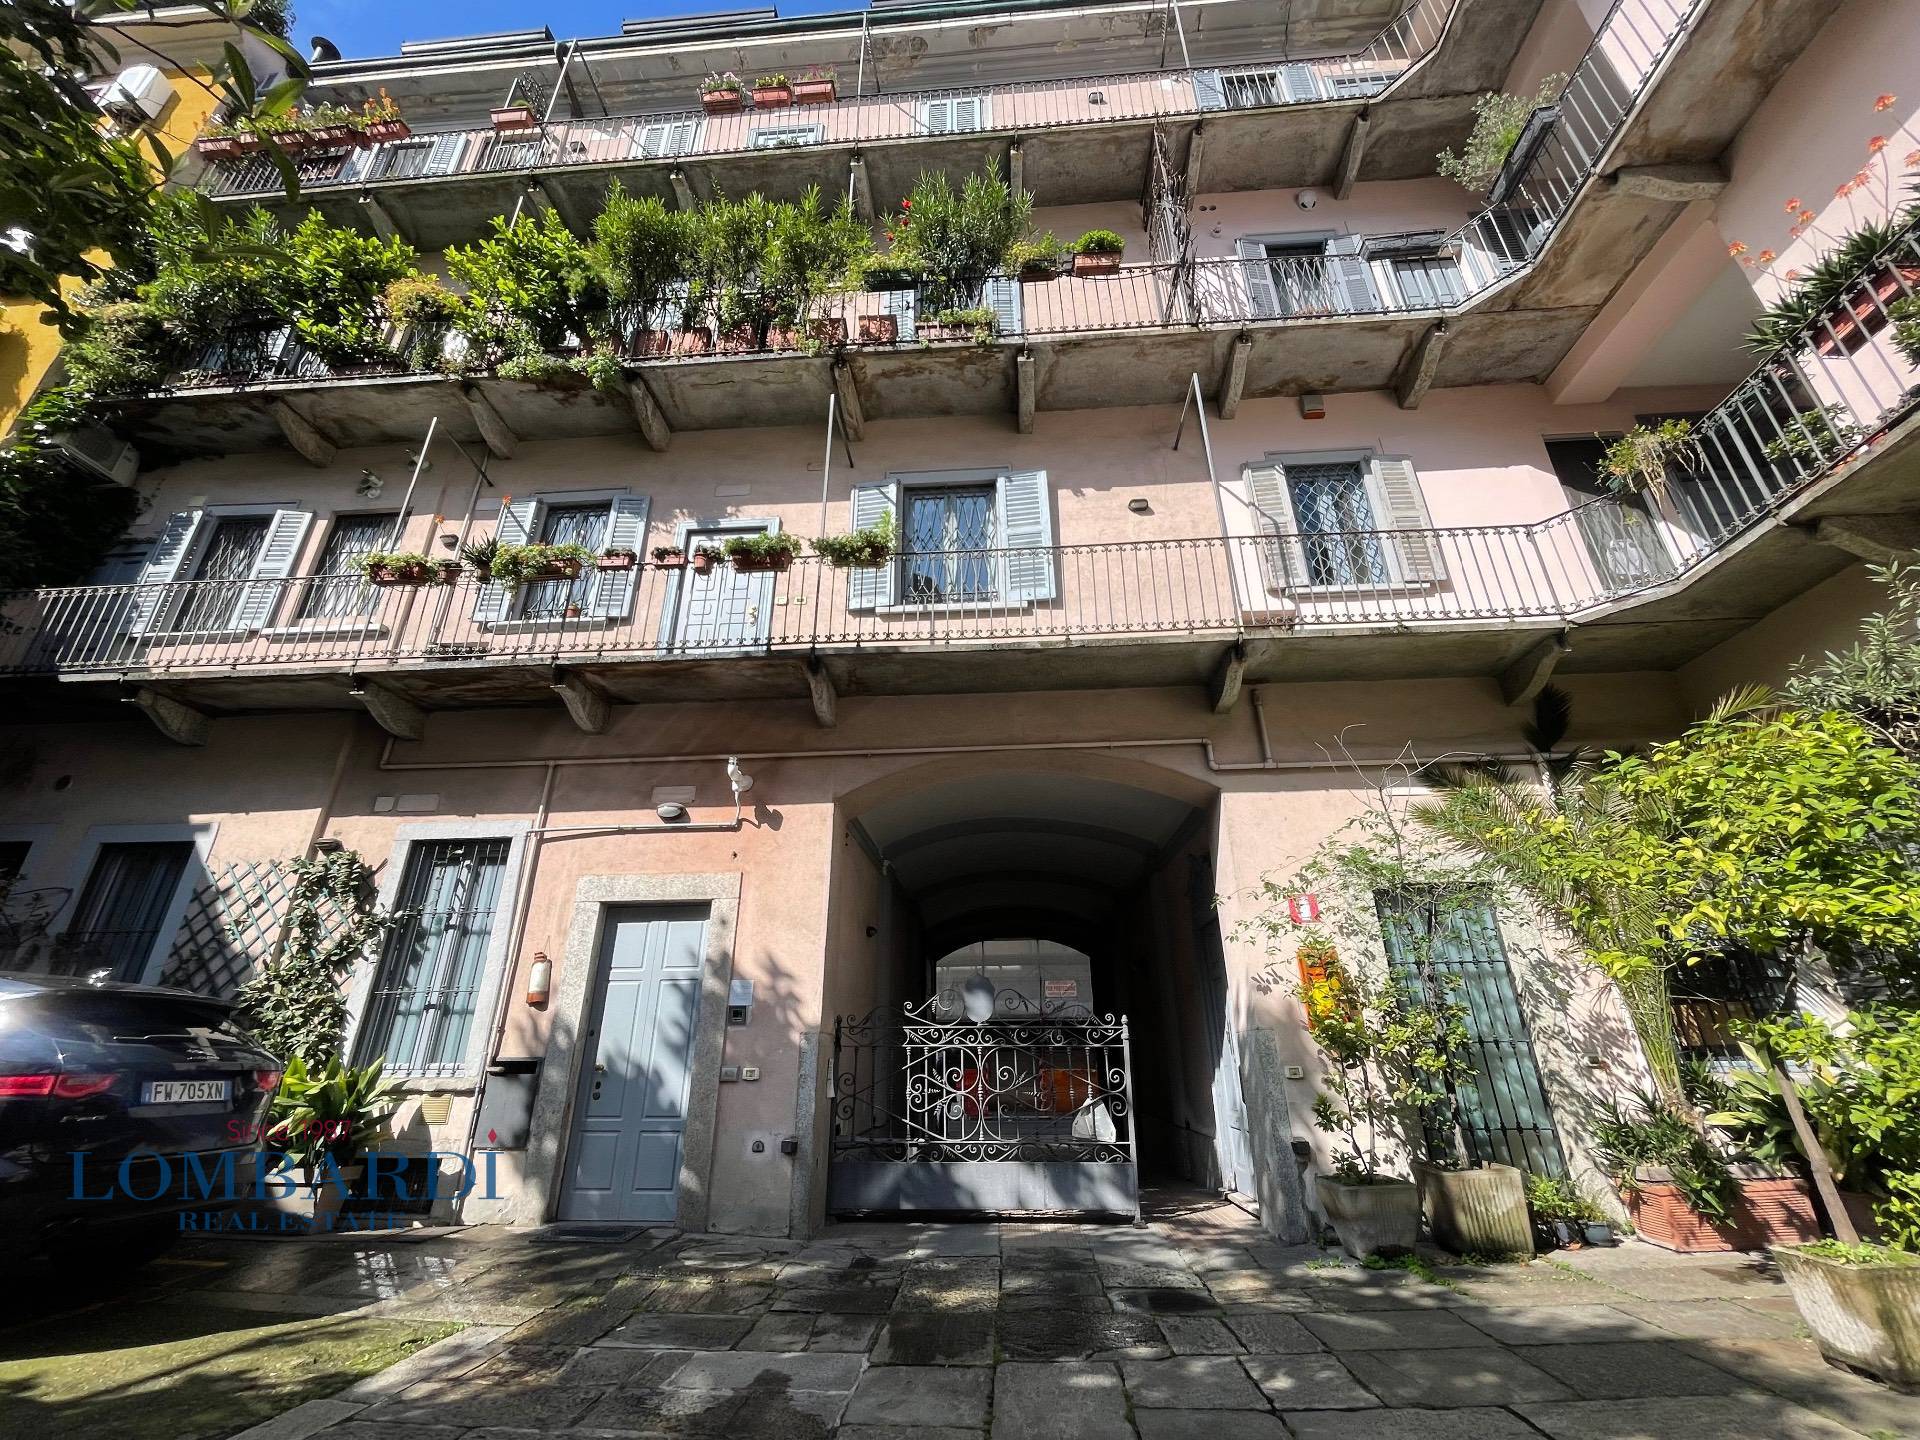 Trilocale arredato in affitto, Milano * brera, moscova, repubblica, cavour, h f.b. frate